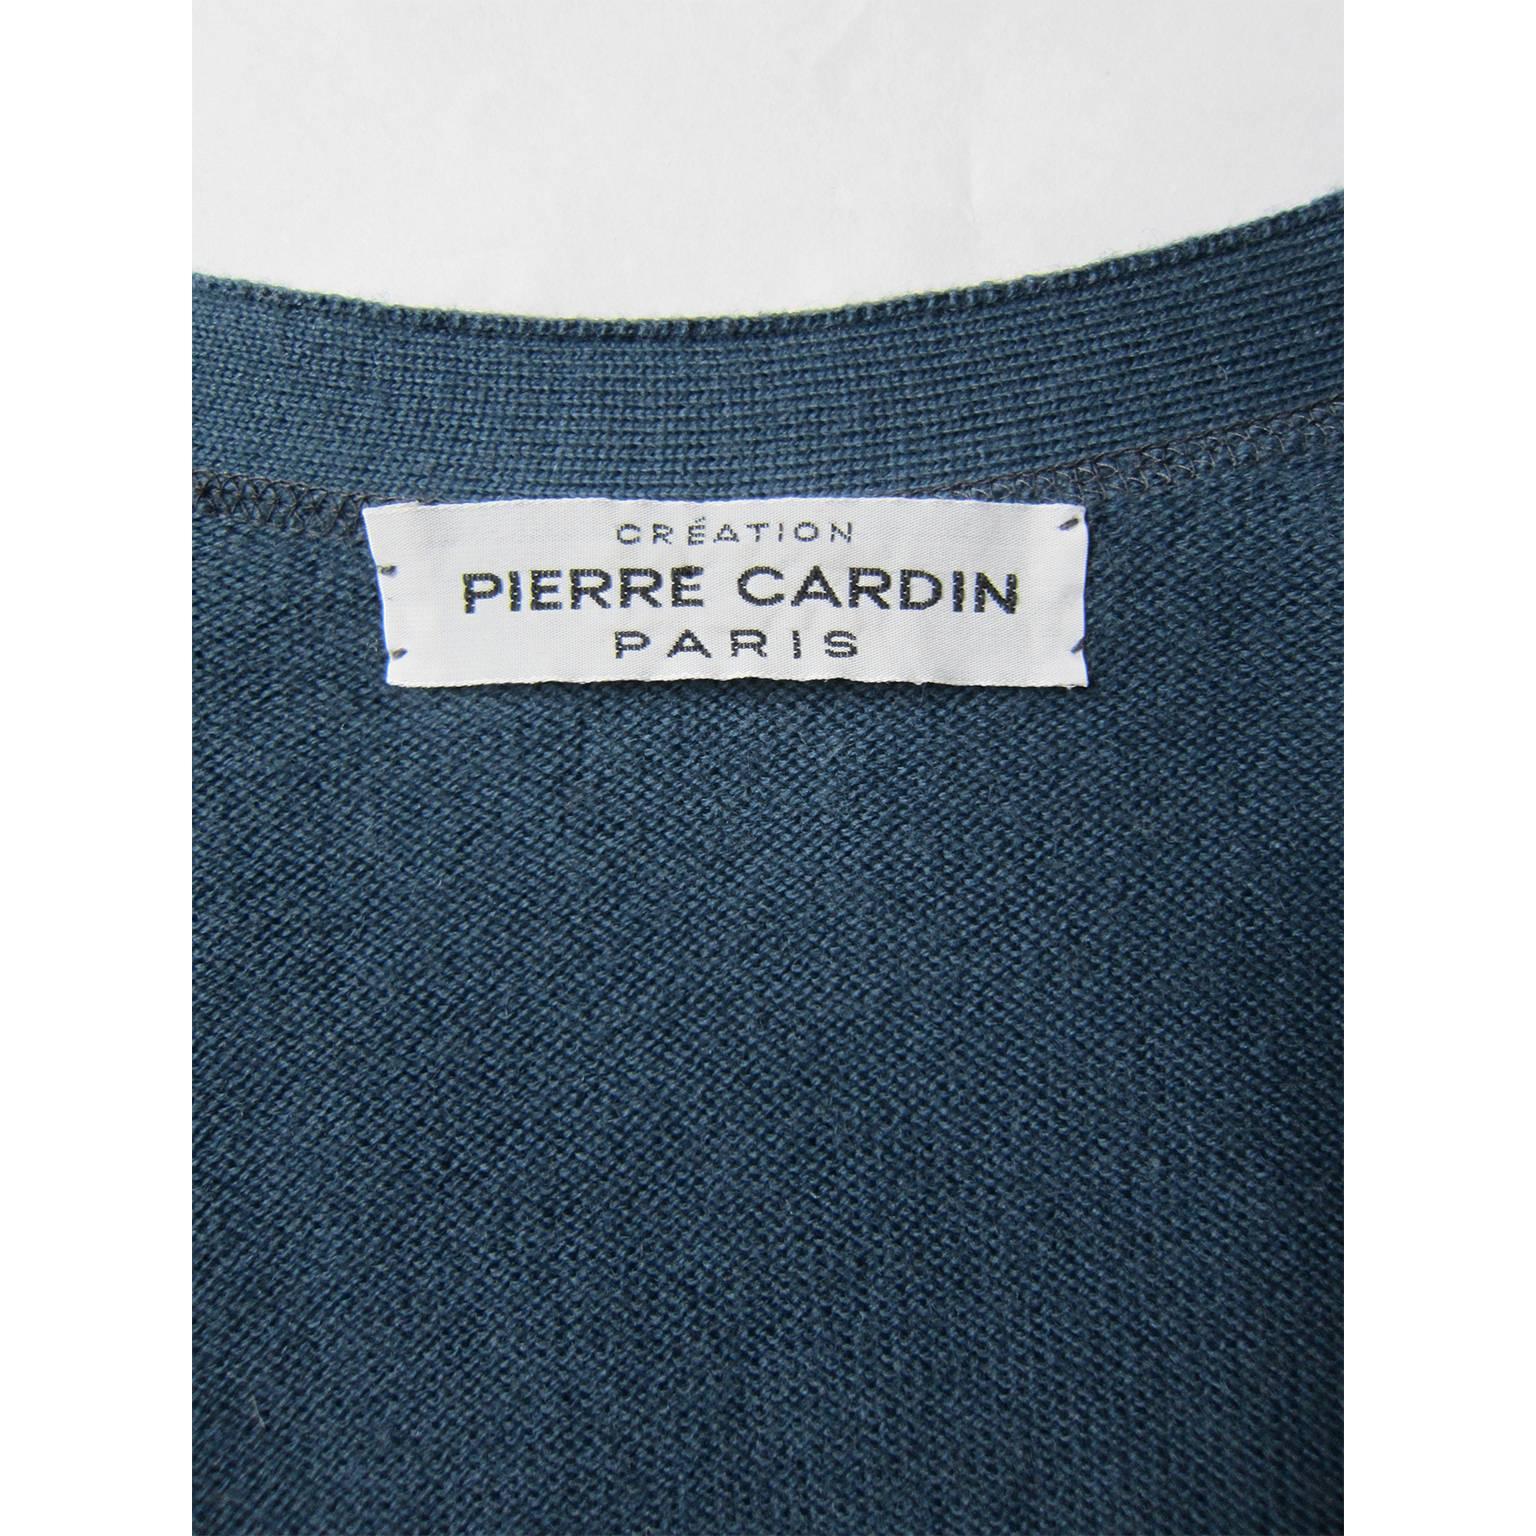 pierre cardin sweater price